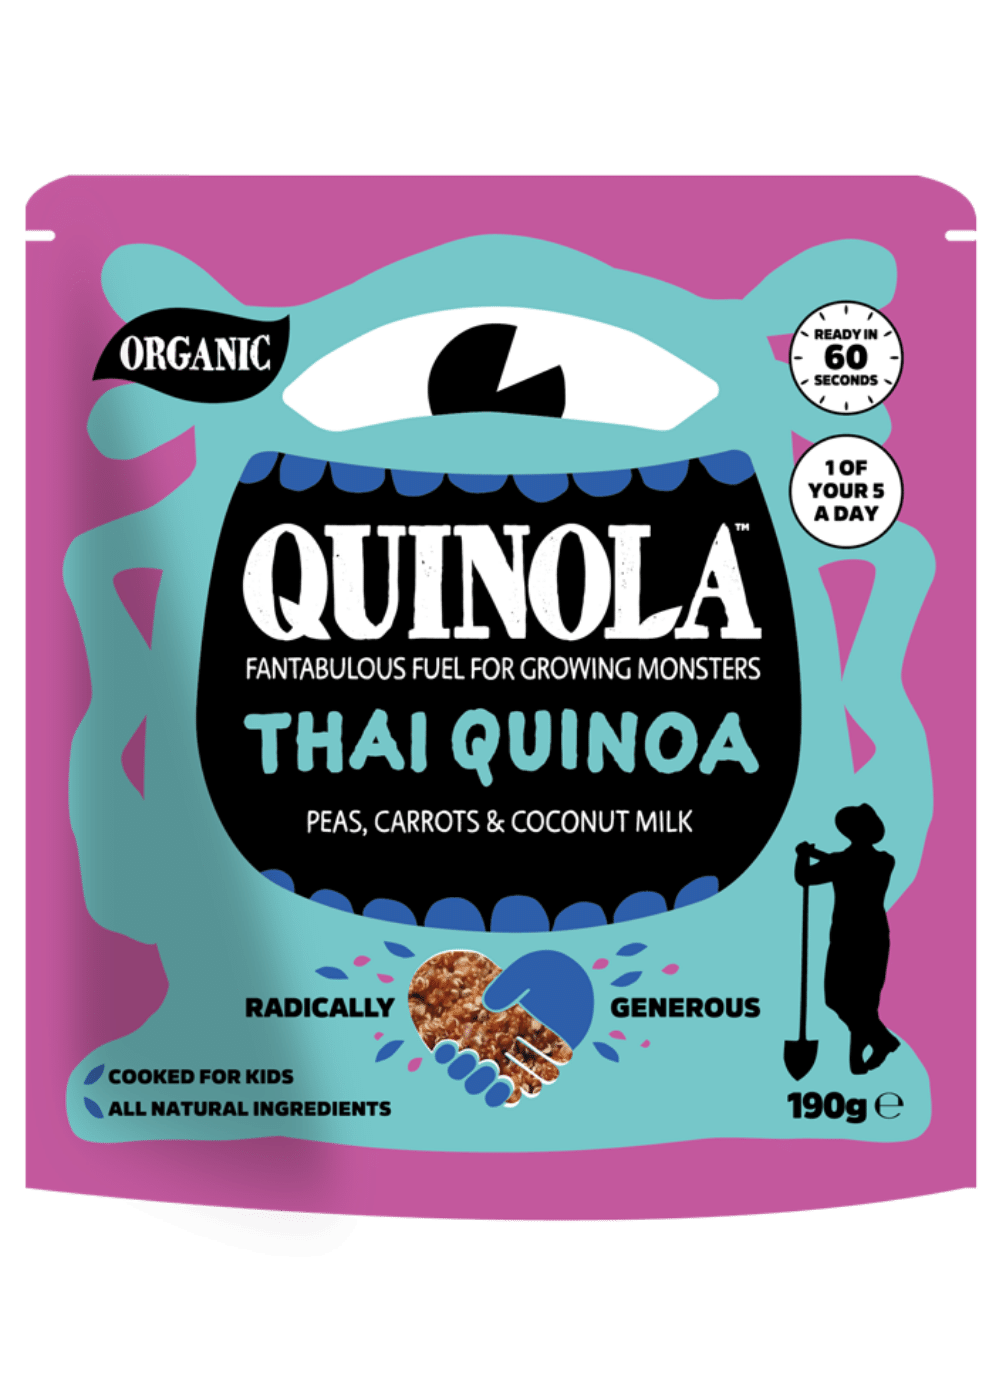 Thai quinoa for kids